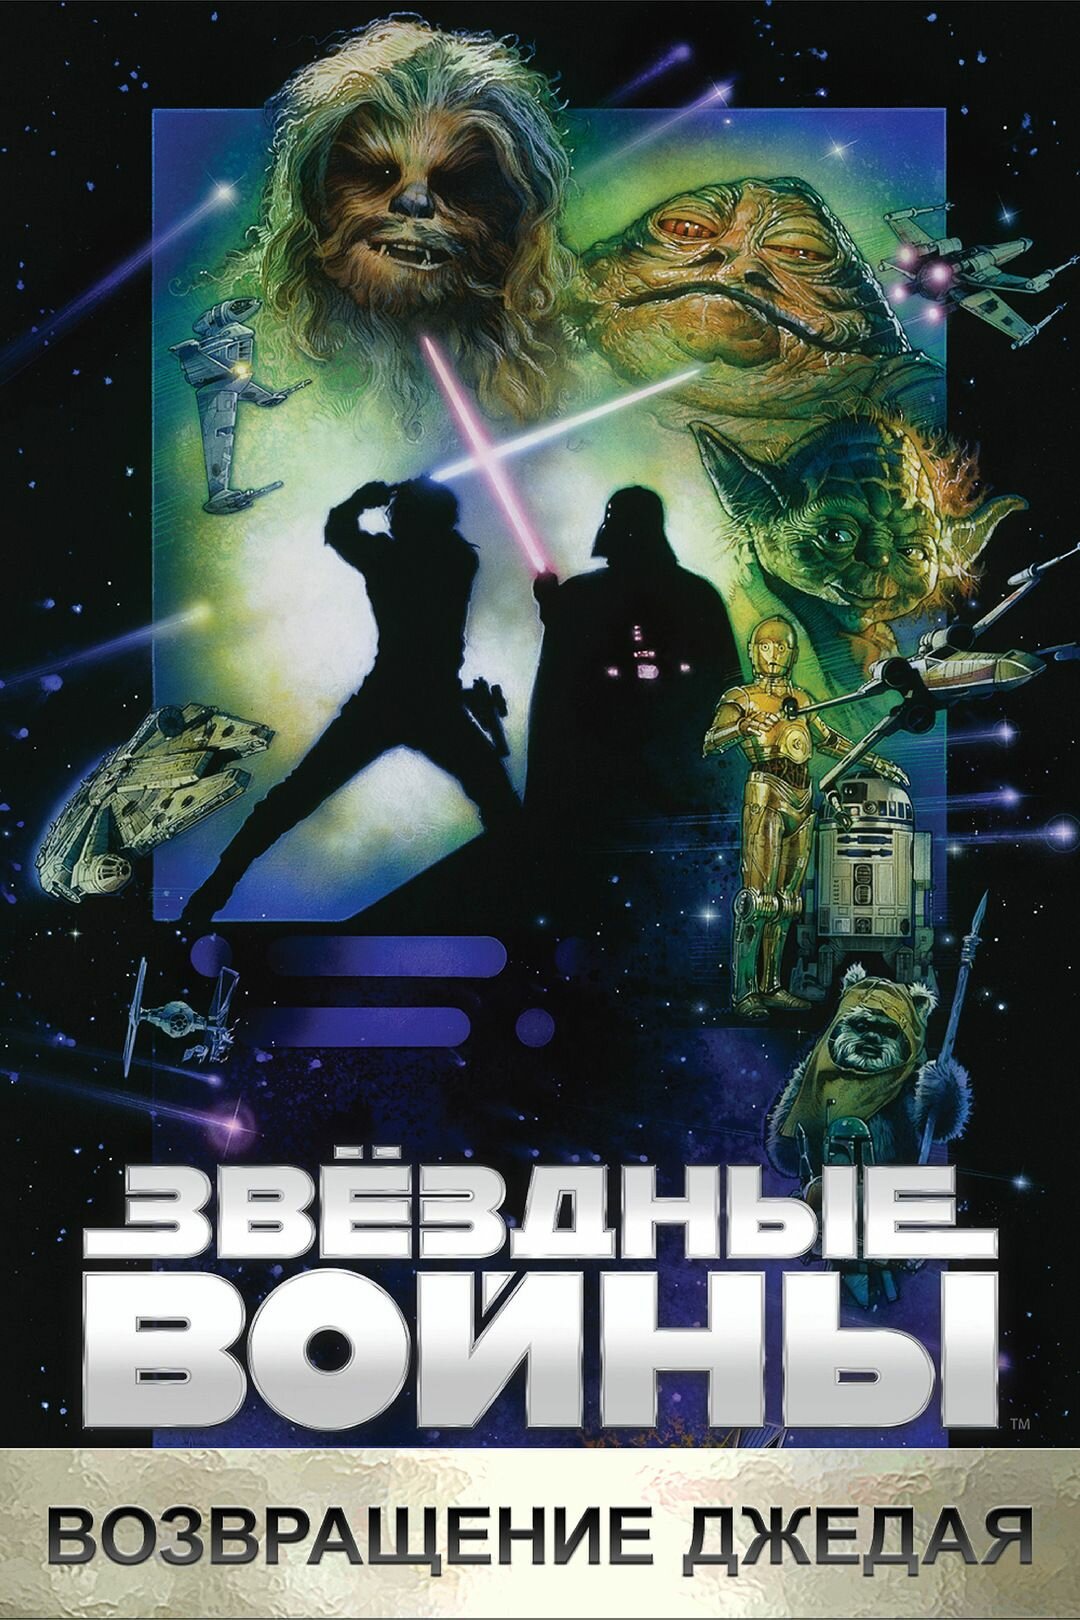 Звёздные войны: Эпизод 6 Возвращение Джедая (DVD-R)